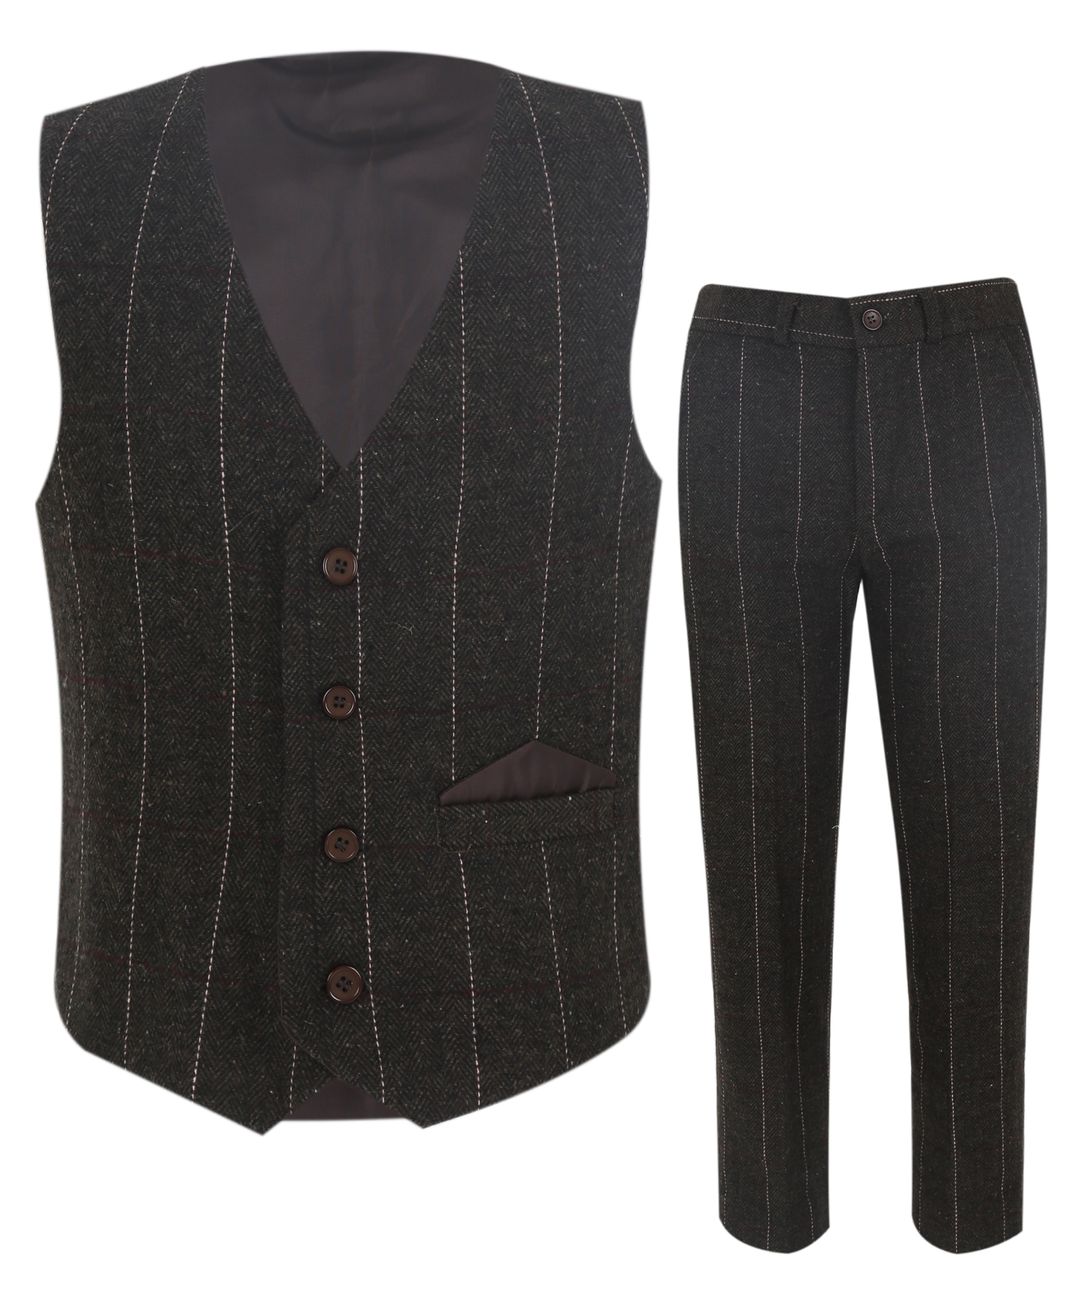 Buy Green 2-Piece Ethnic Suit for Men by HANGUP PLUS Online | Ajio.com